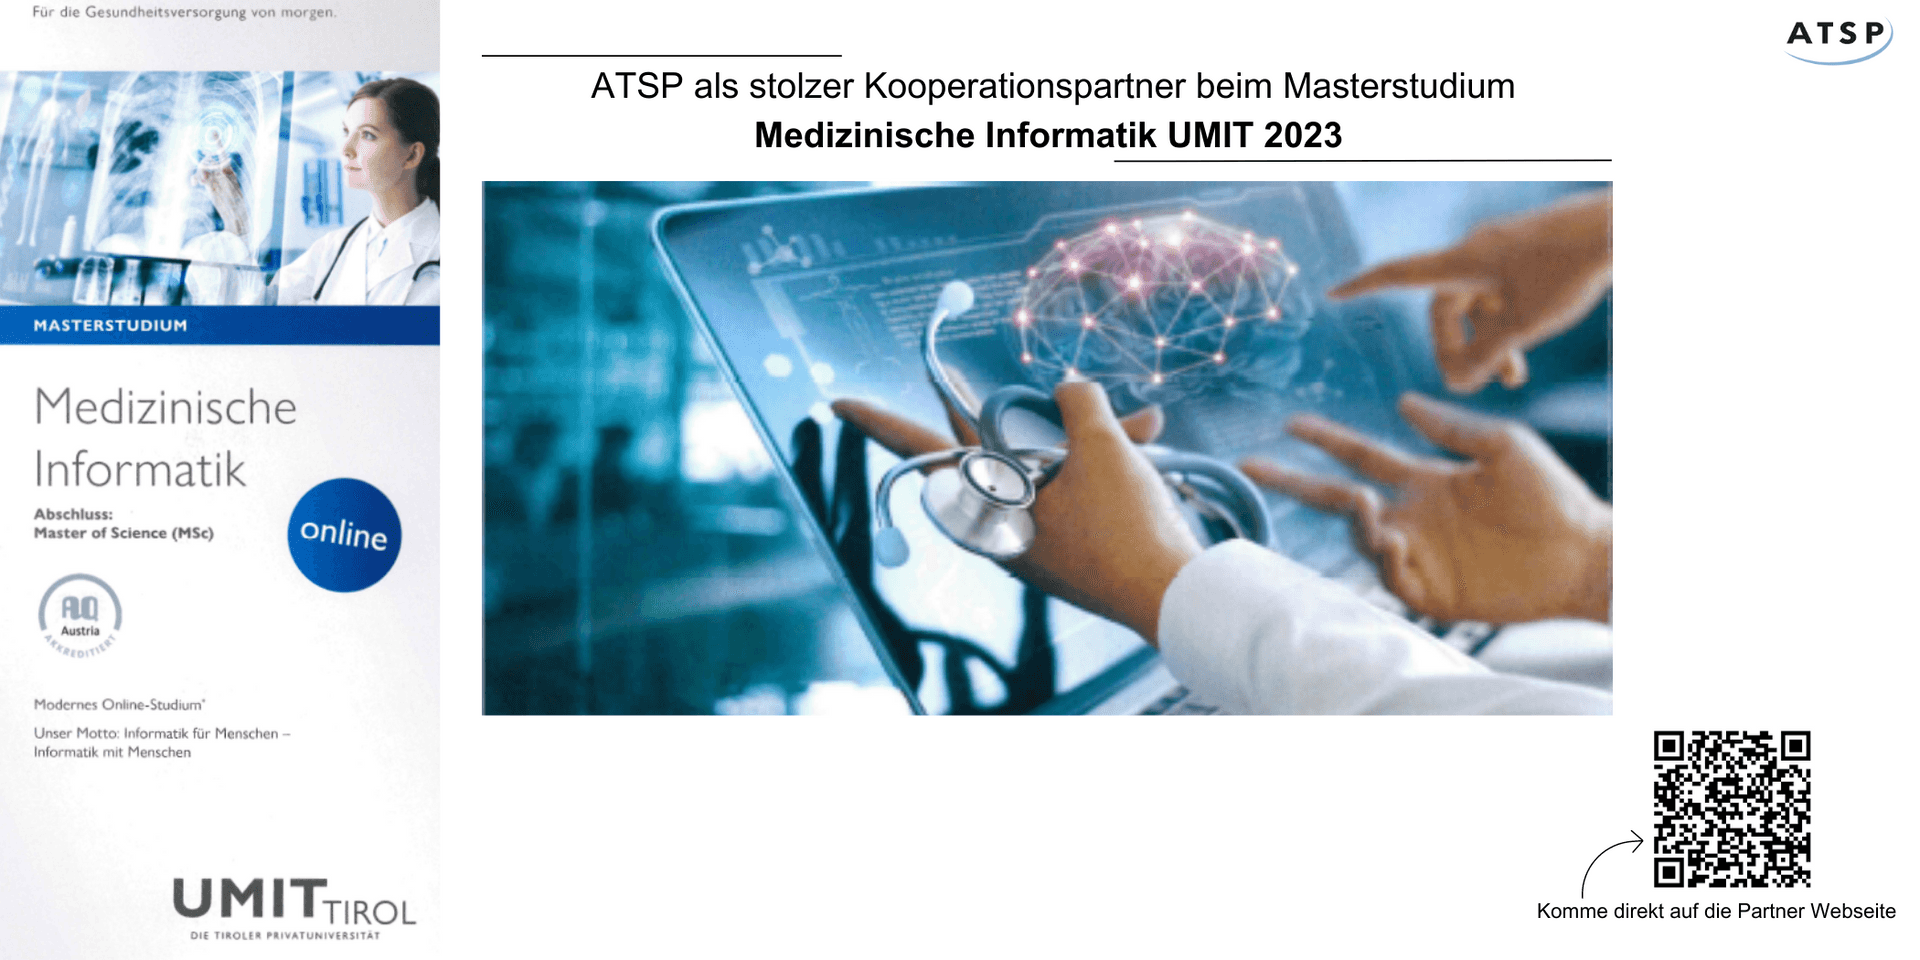 ATSP als stolzer Kooperationspartner beim Masterstudium Medizinische Informatik UMIT 2023